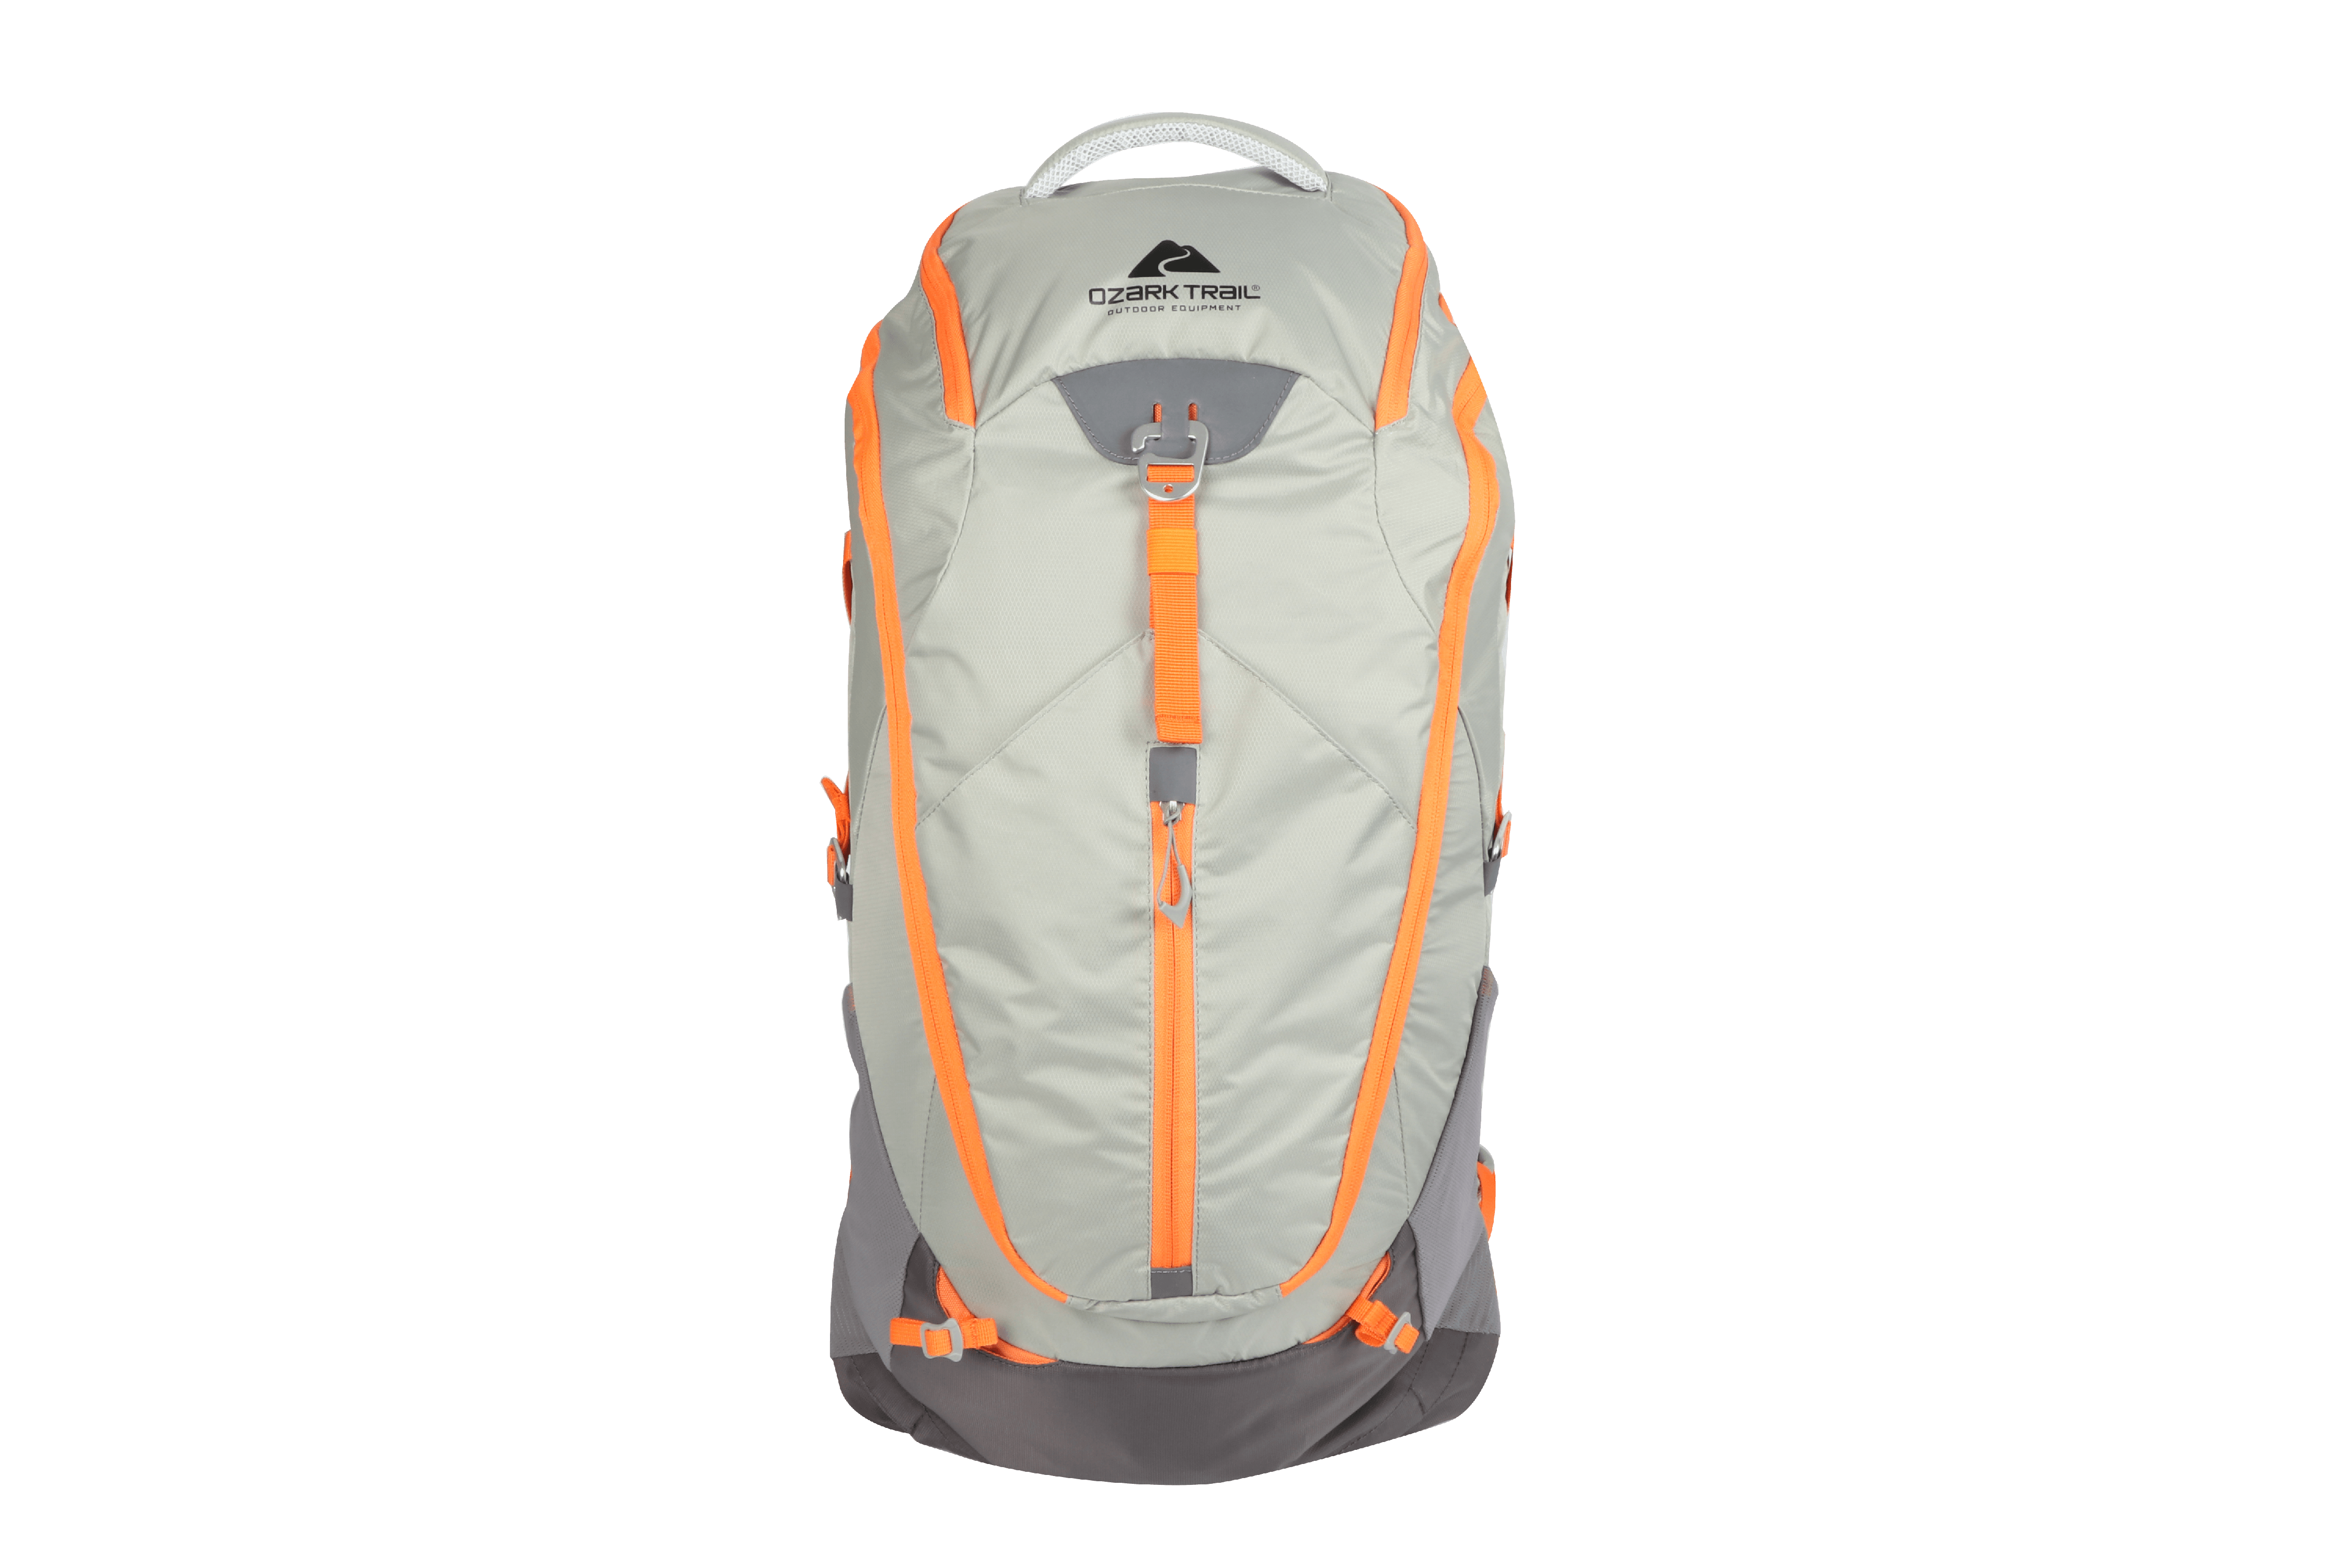 Ozark Trail 30 Liter Nylon Backpack, Adult, Unisex, Gray - image 3 of 5